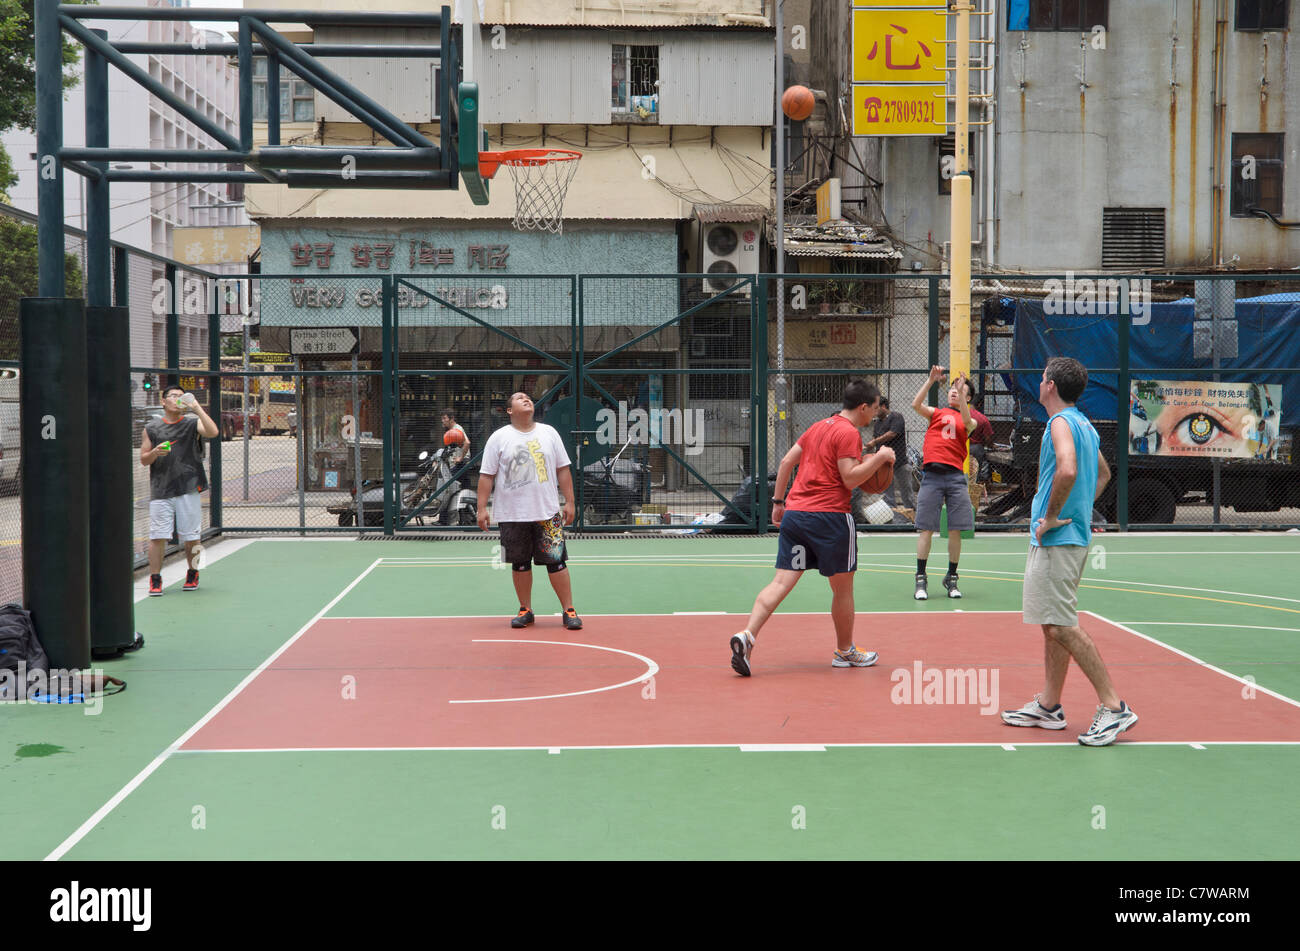 Cancha de baloncesto de la ciudad interior de Hong Kong Fotografía de stock  - Alamy